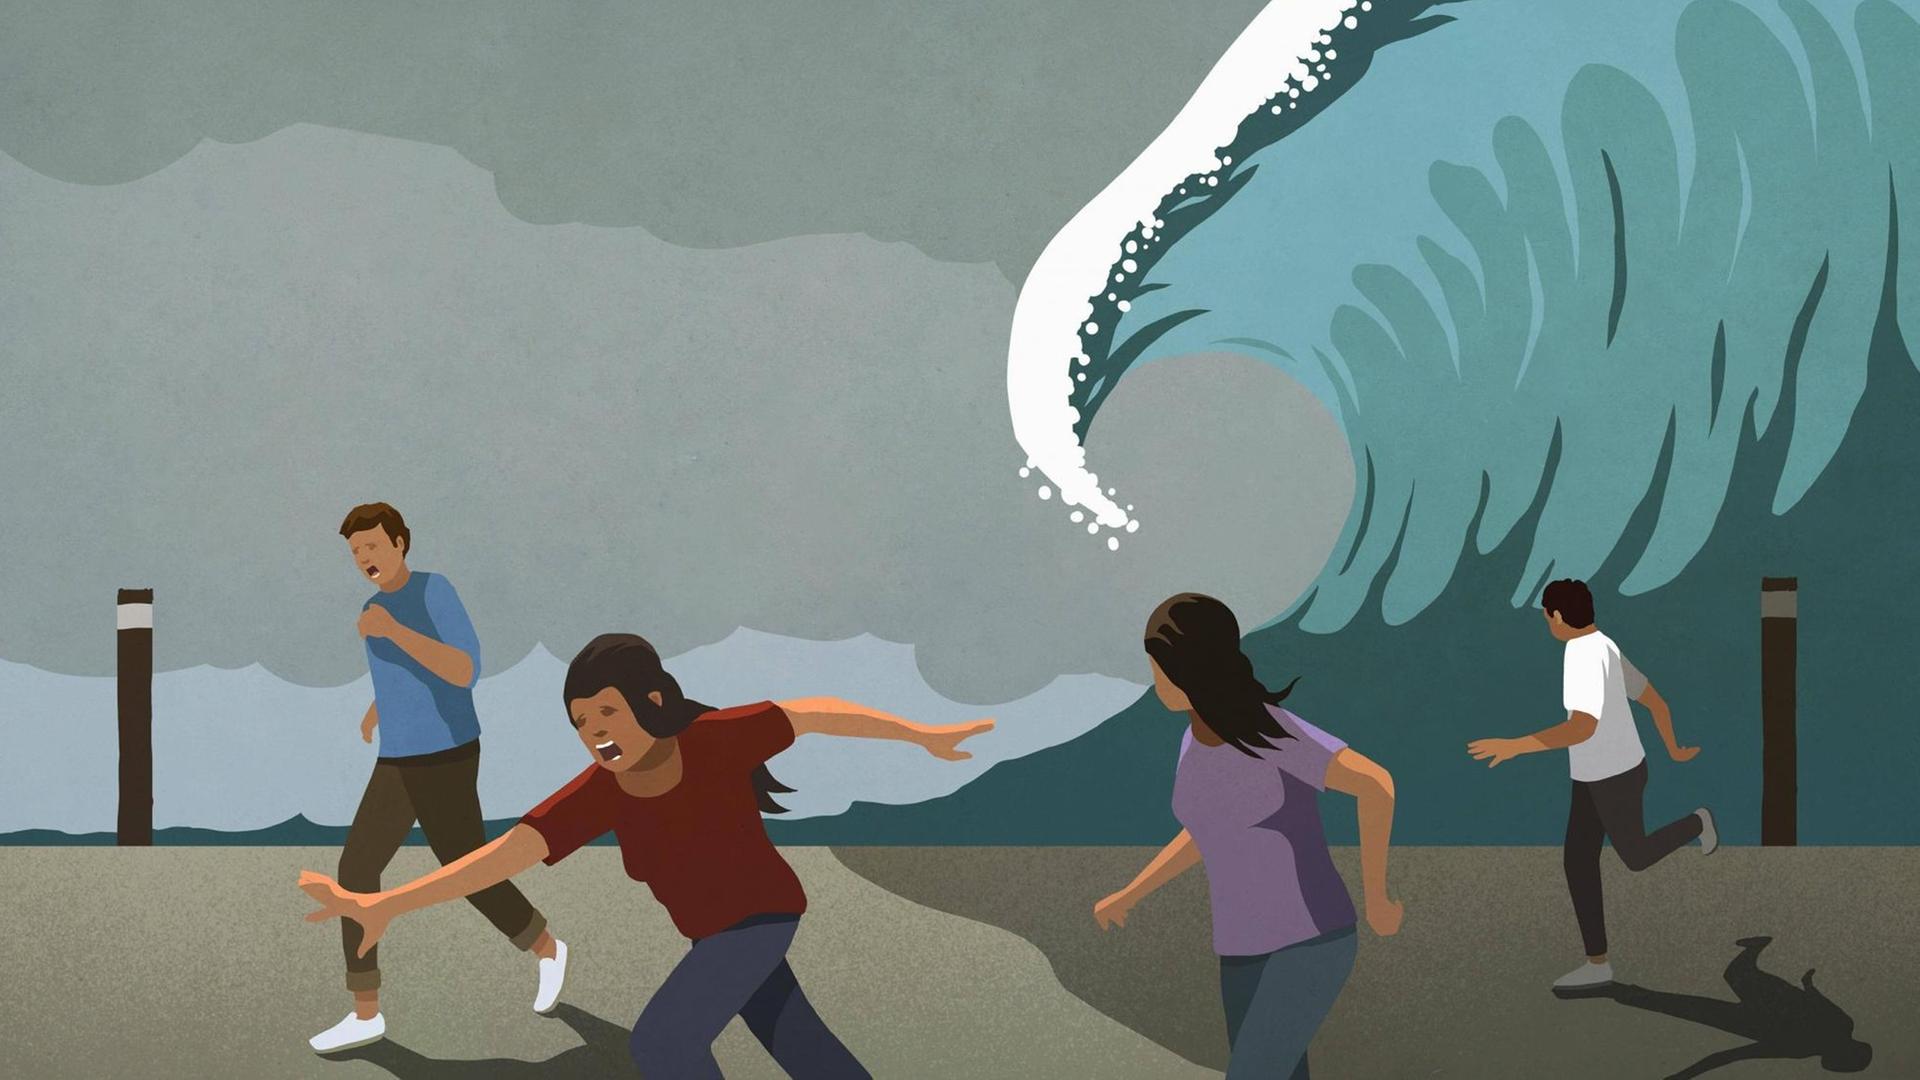 Leute rennen vor einer riesigen Welle weg (Illustration).